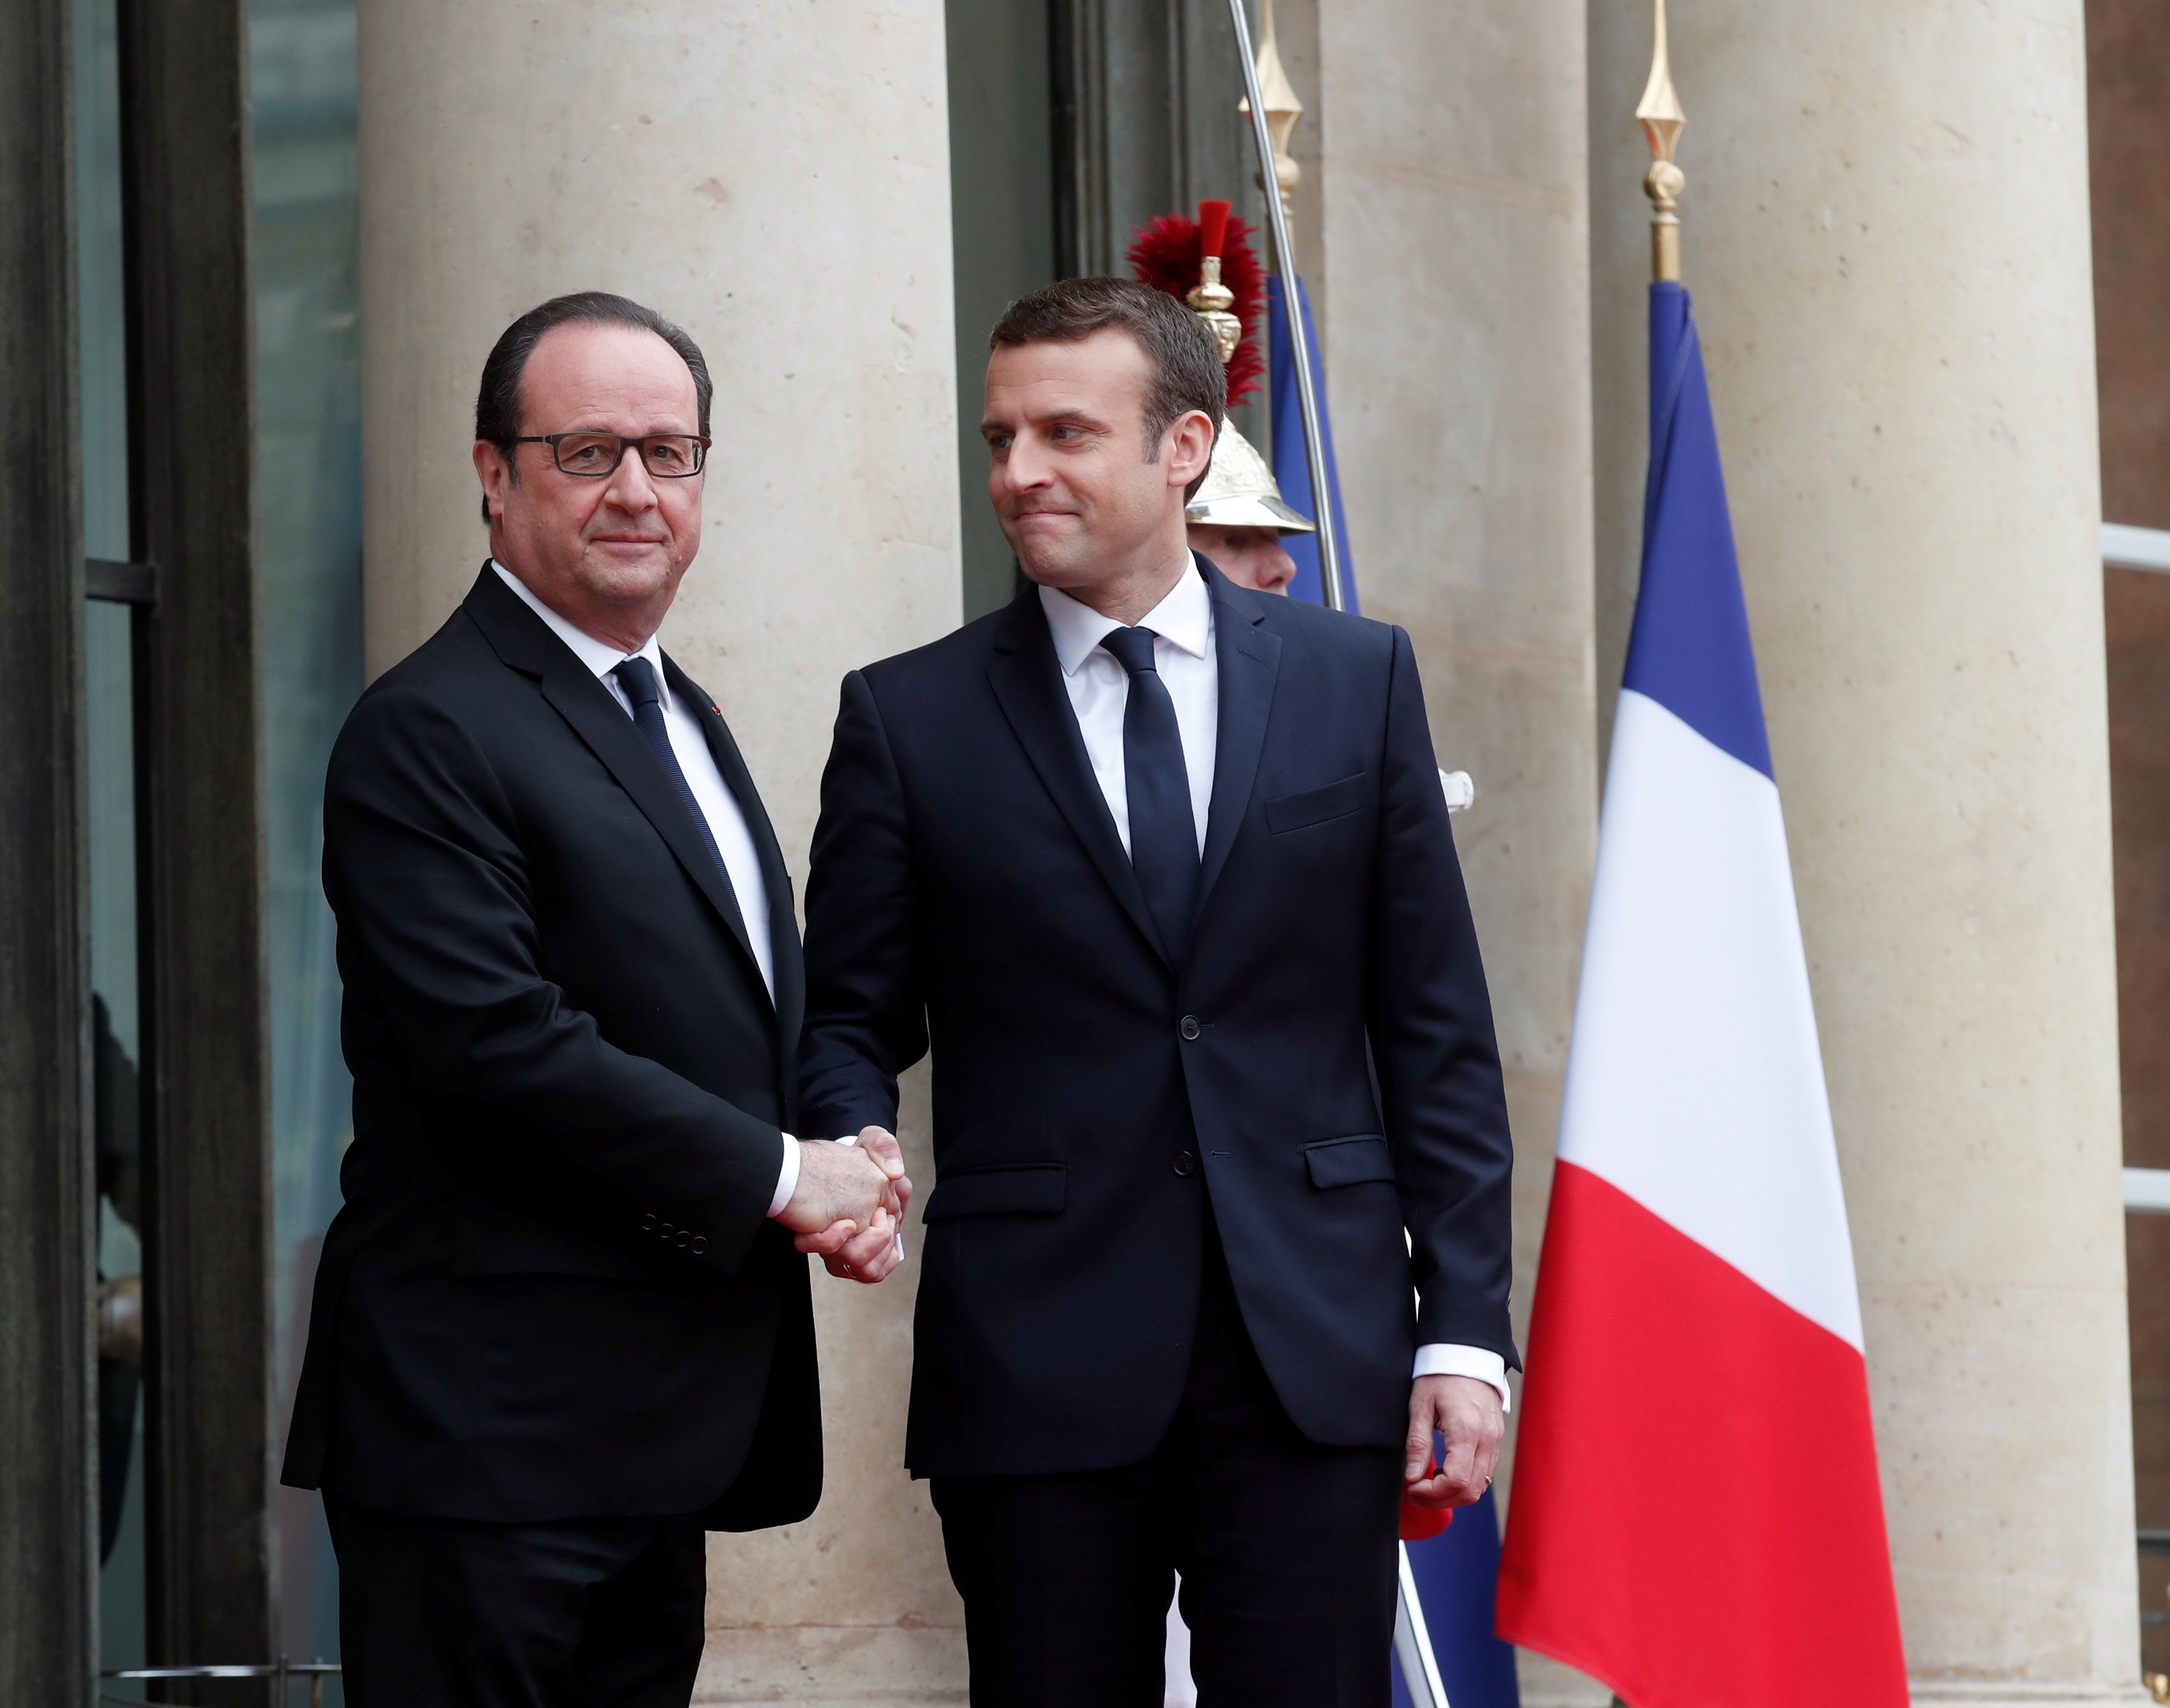 El expresidente Francois Hollande saluda al nuevo mandatario francés, Emmanuel Macron, en el Palacio del Elíseo, en París, Francia (Reuters)